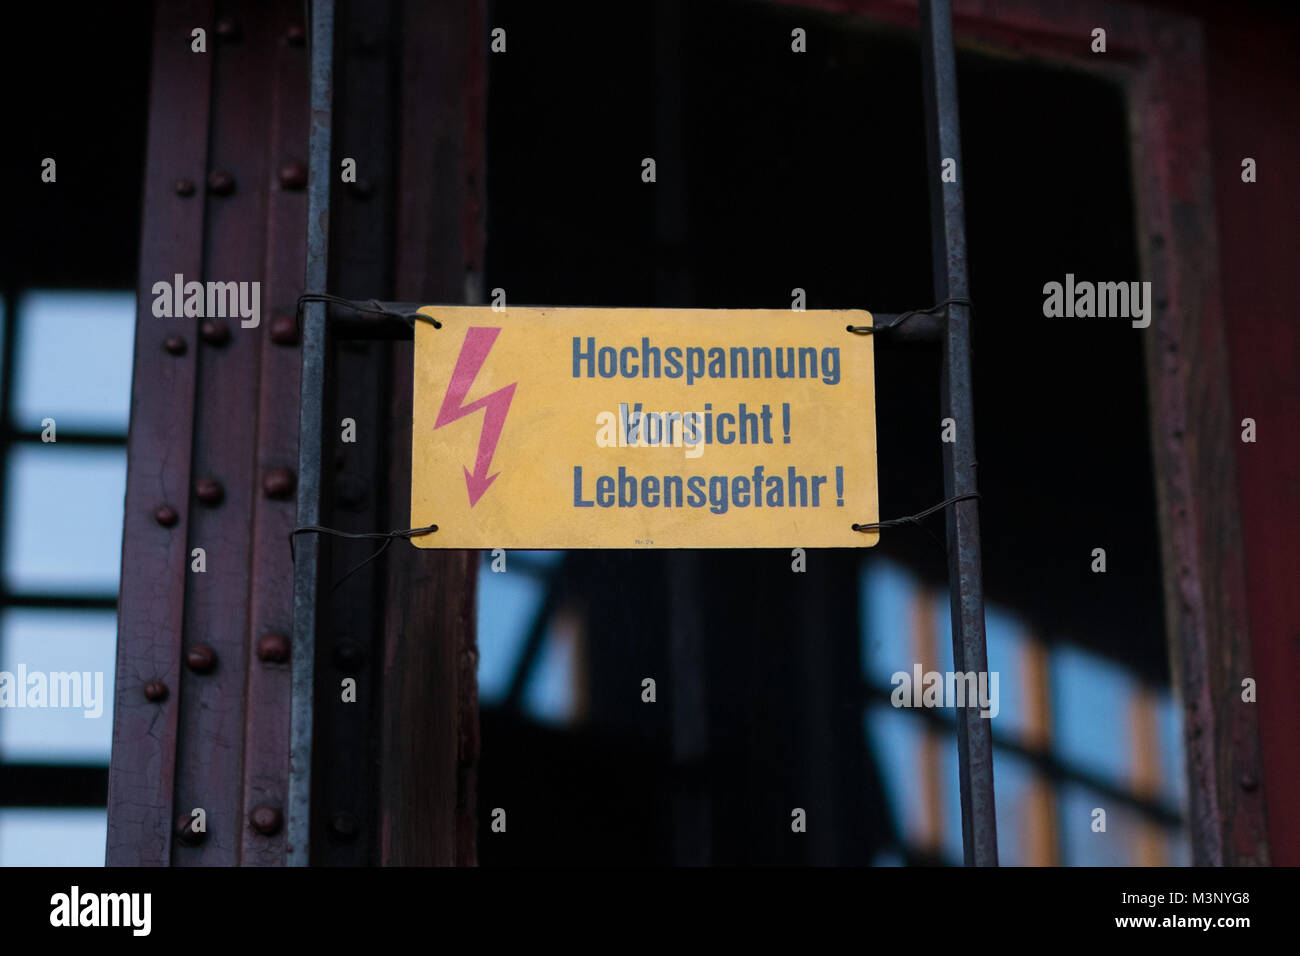 Elettricità segno di avvertimento con flash simbolo e testo tedesco: Hochspannung Vorsicht Lebensgefahr ( Alta tensione pericolo mortale) Foto Stock